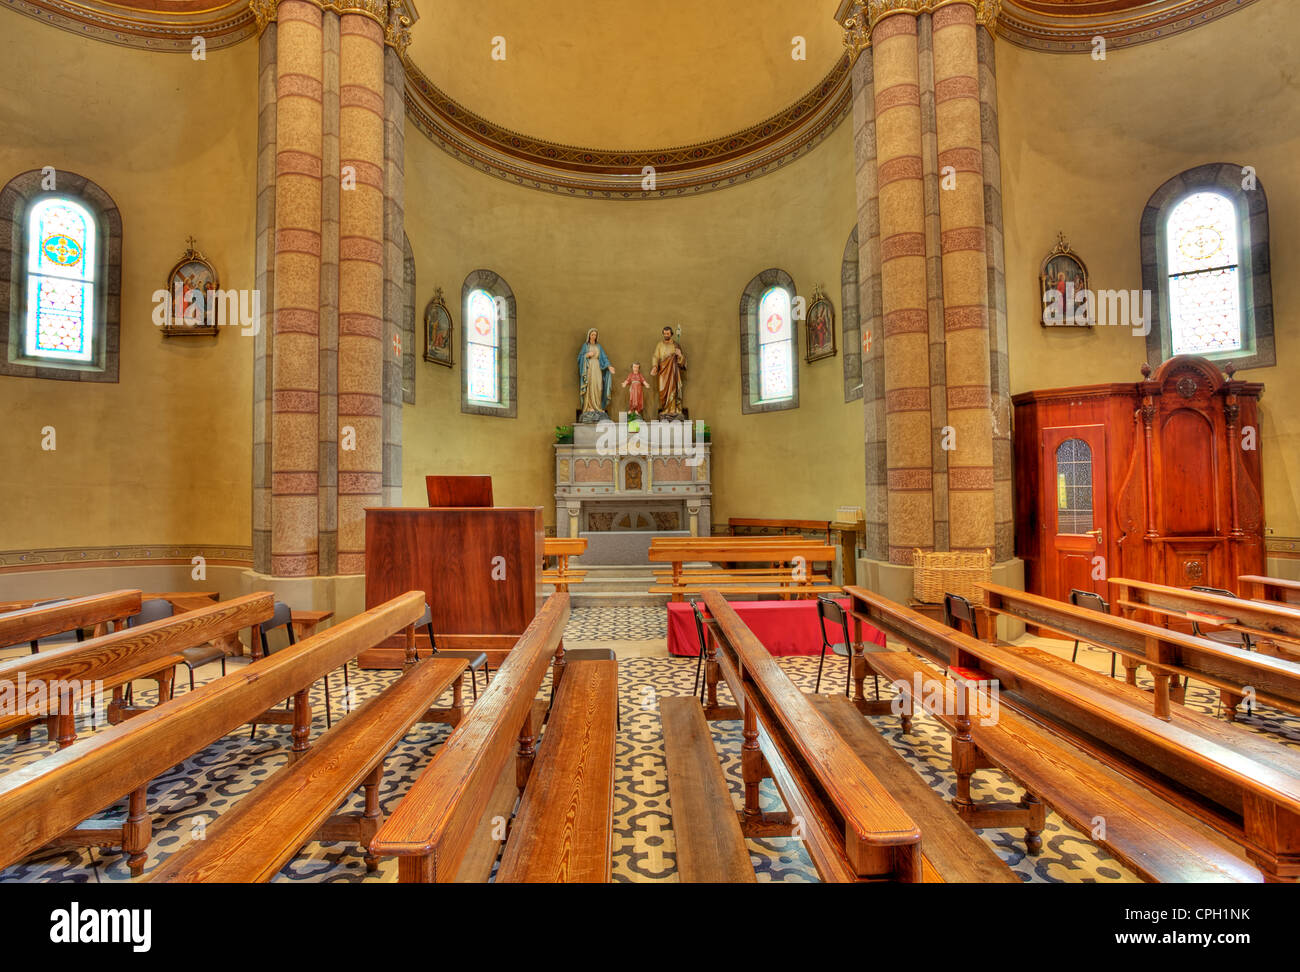 Bänke und Altar mit Skulpturen von Jesus, Maria und Joseph als Teil des Kirchenraumes in Alba, Norditalien. Stockfoto